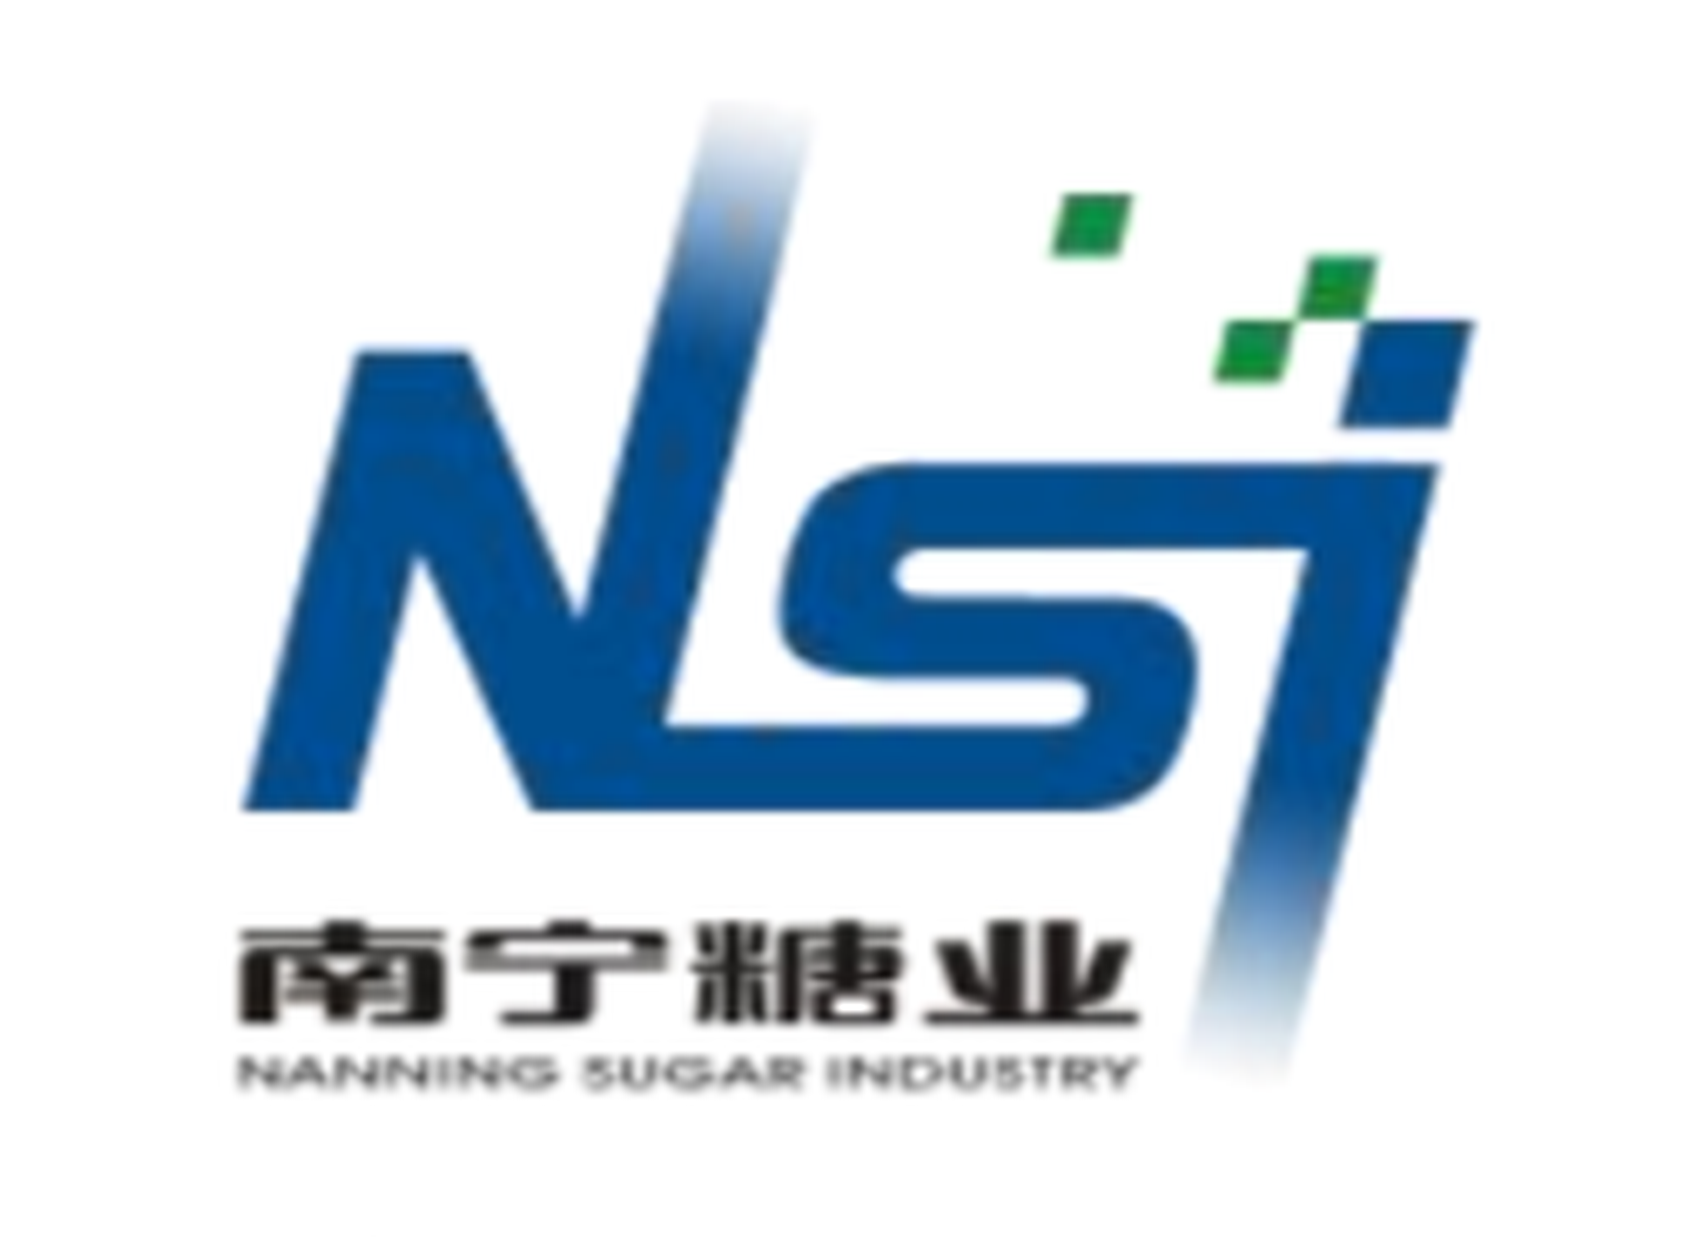  *ST Nantang lost more than 1.3 billion yuan